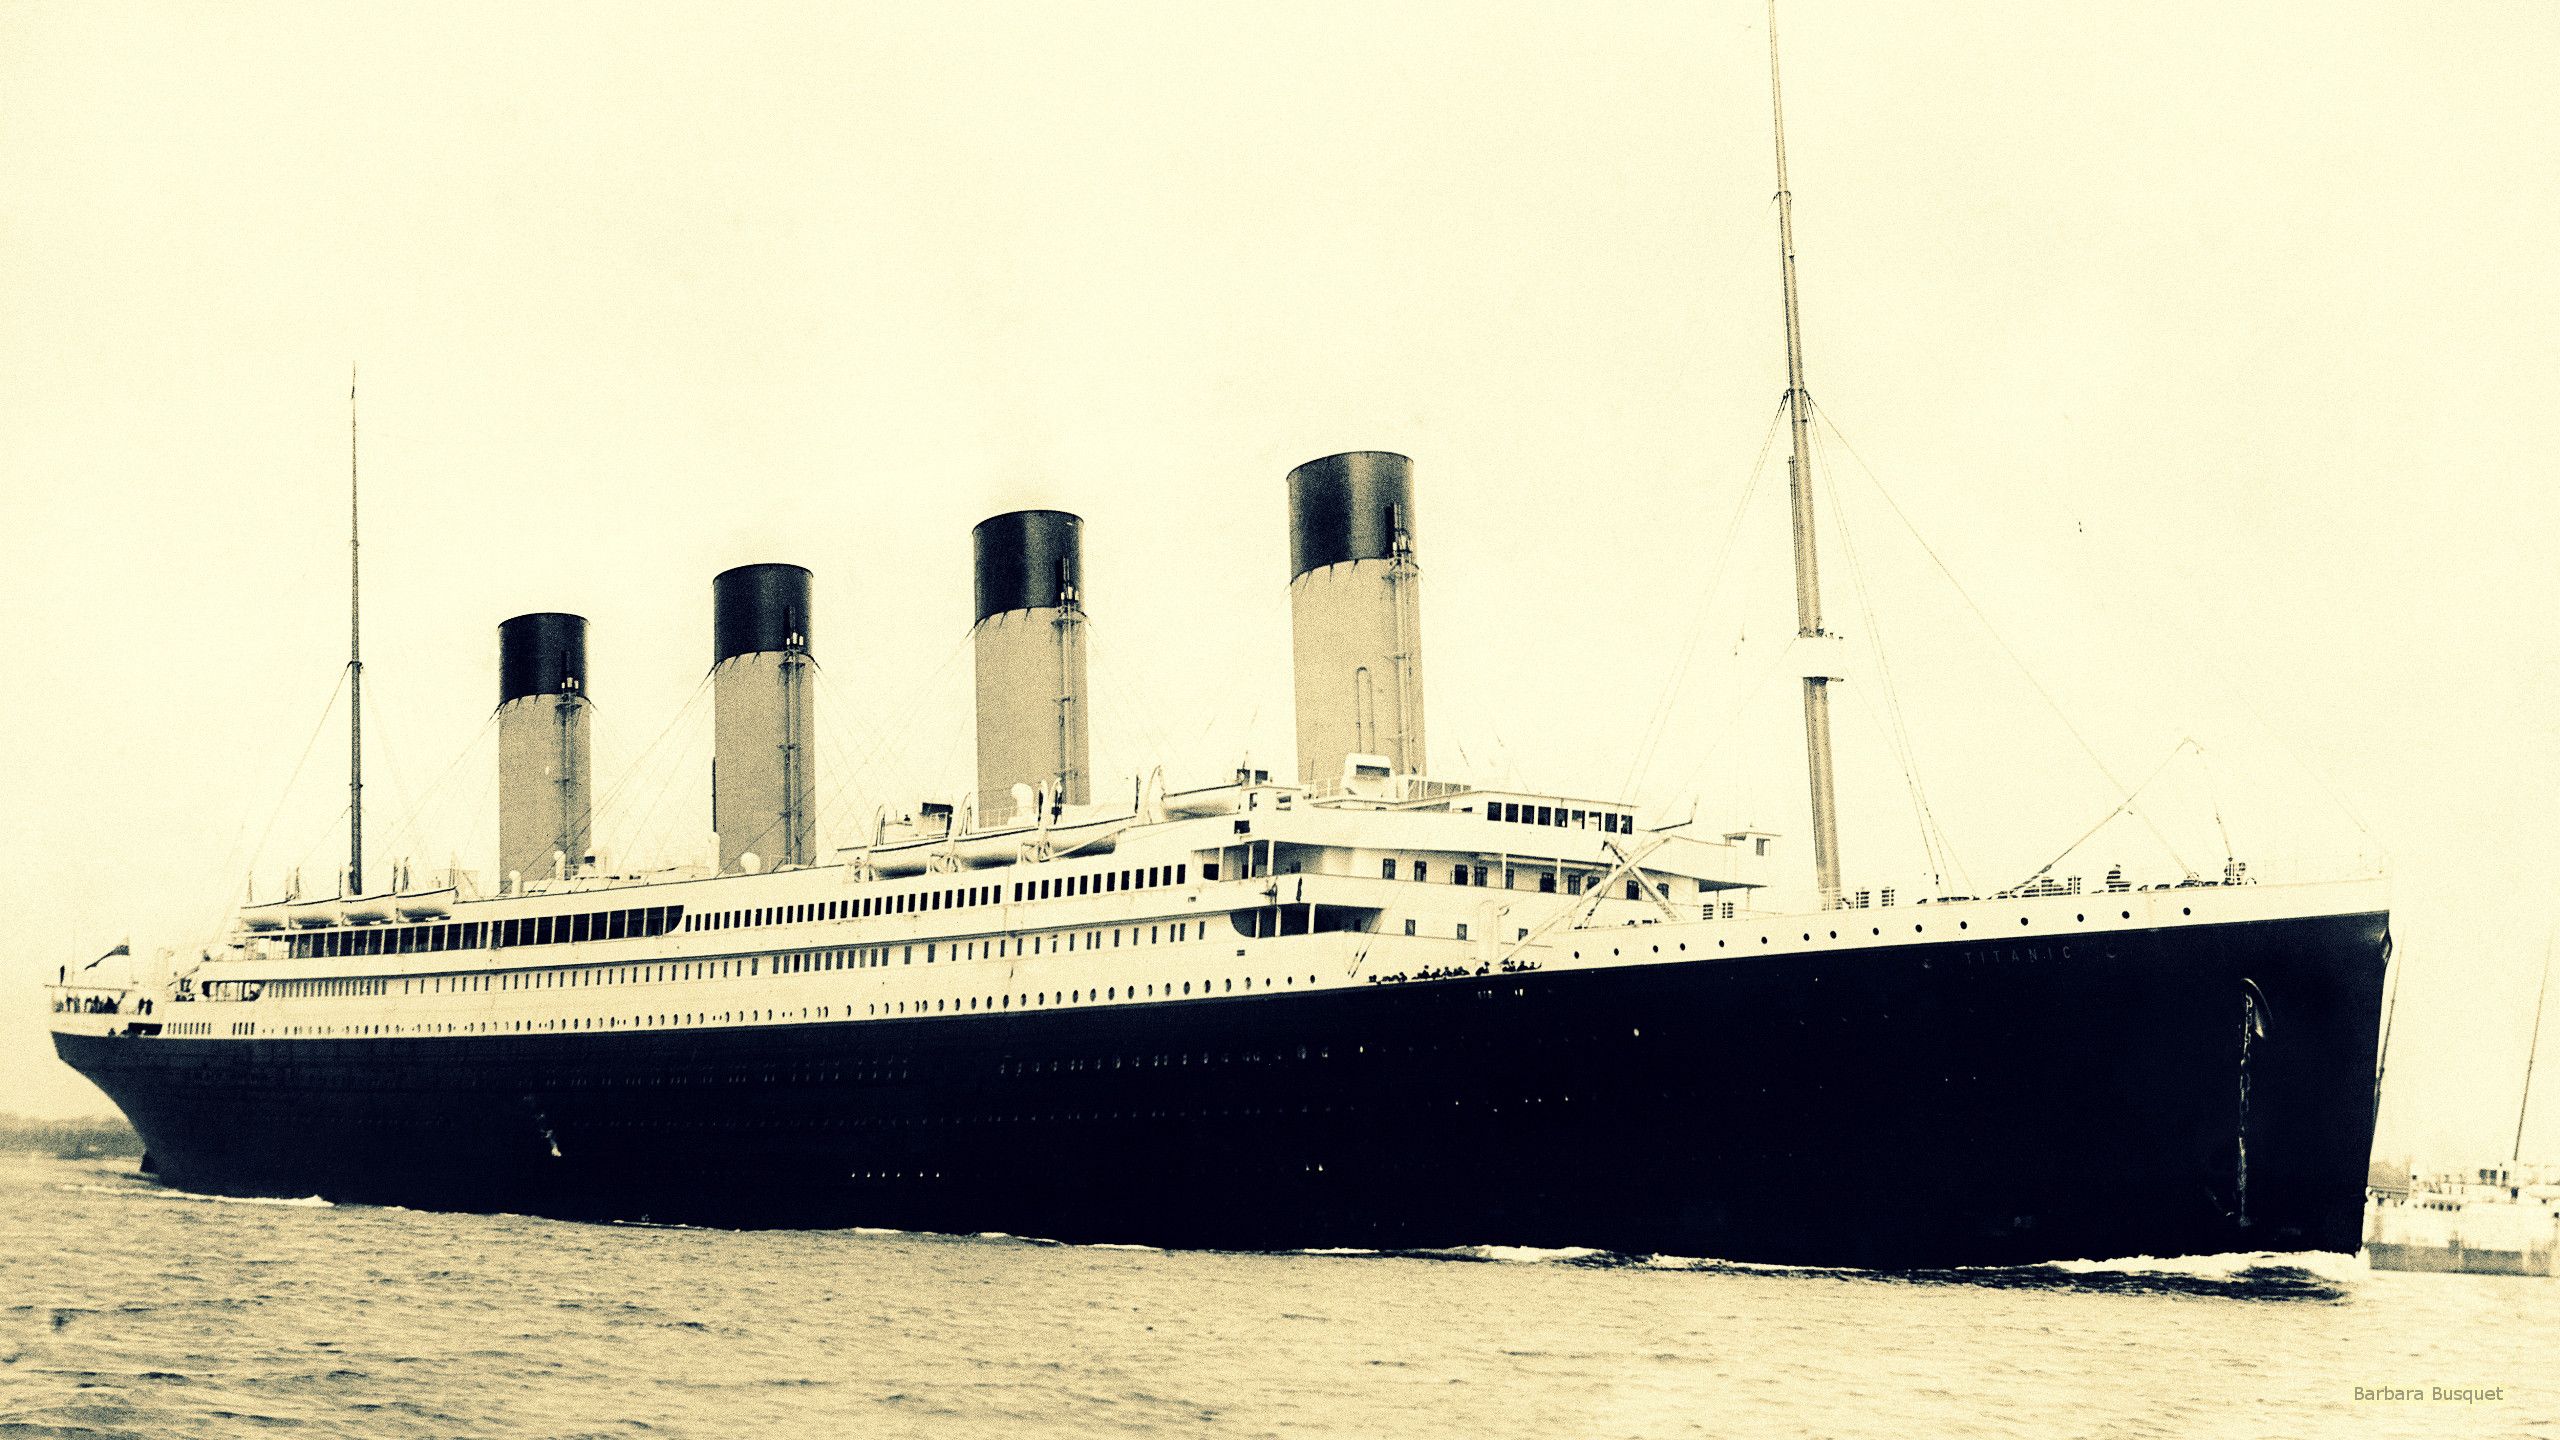 The Weather Phenomenon that Sank the RMS Titanic